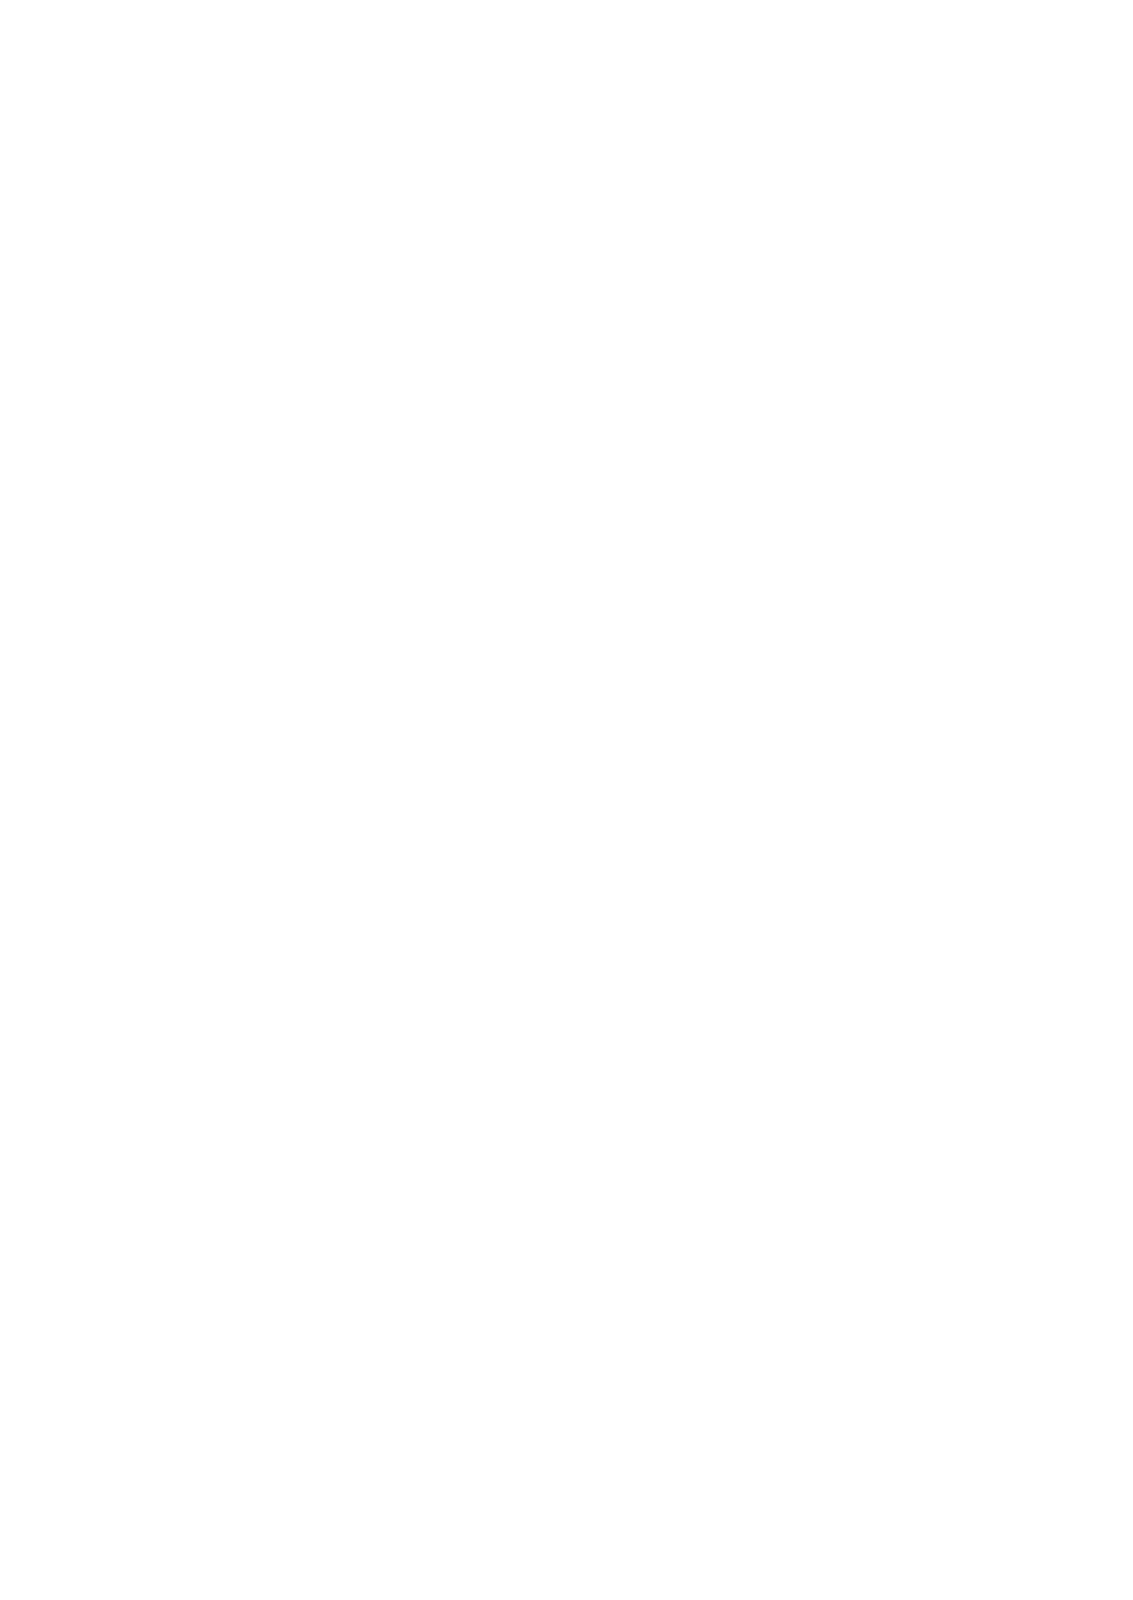 『攻殻機動隊 SAC_2045』戸田信子×陣内一真によるオリジナルサウンドトラック発売サムネイル画像!